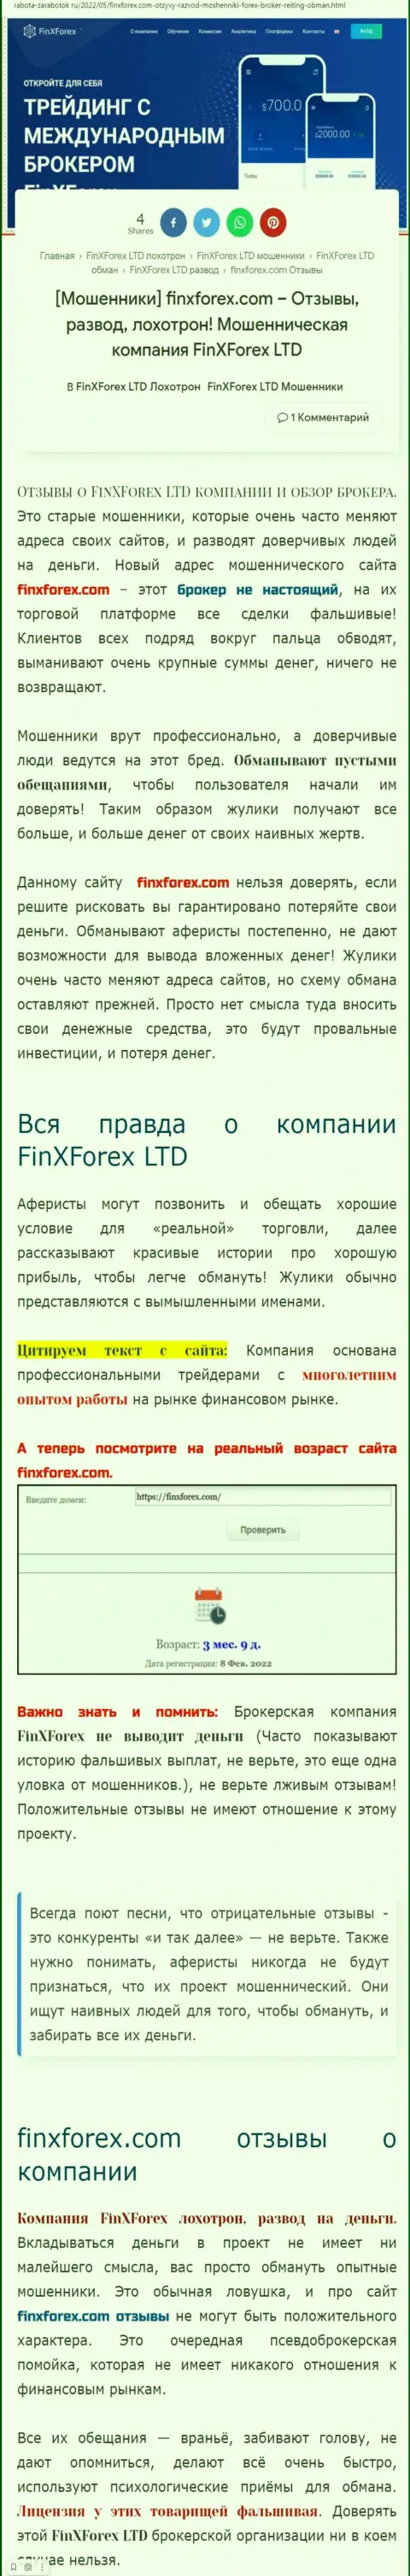 Автор обзора об ФинИксФорекс говорит, что в организации FinXForex LTD мошенничают